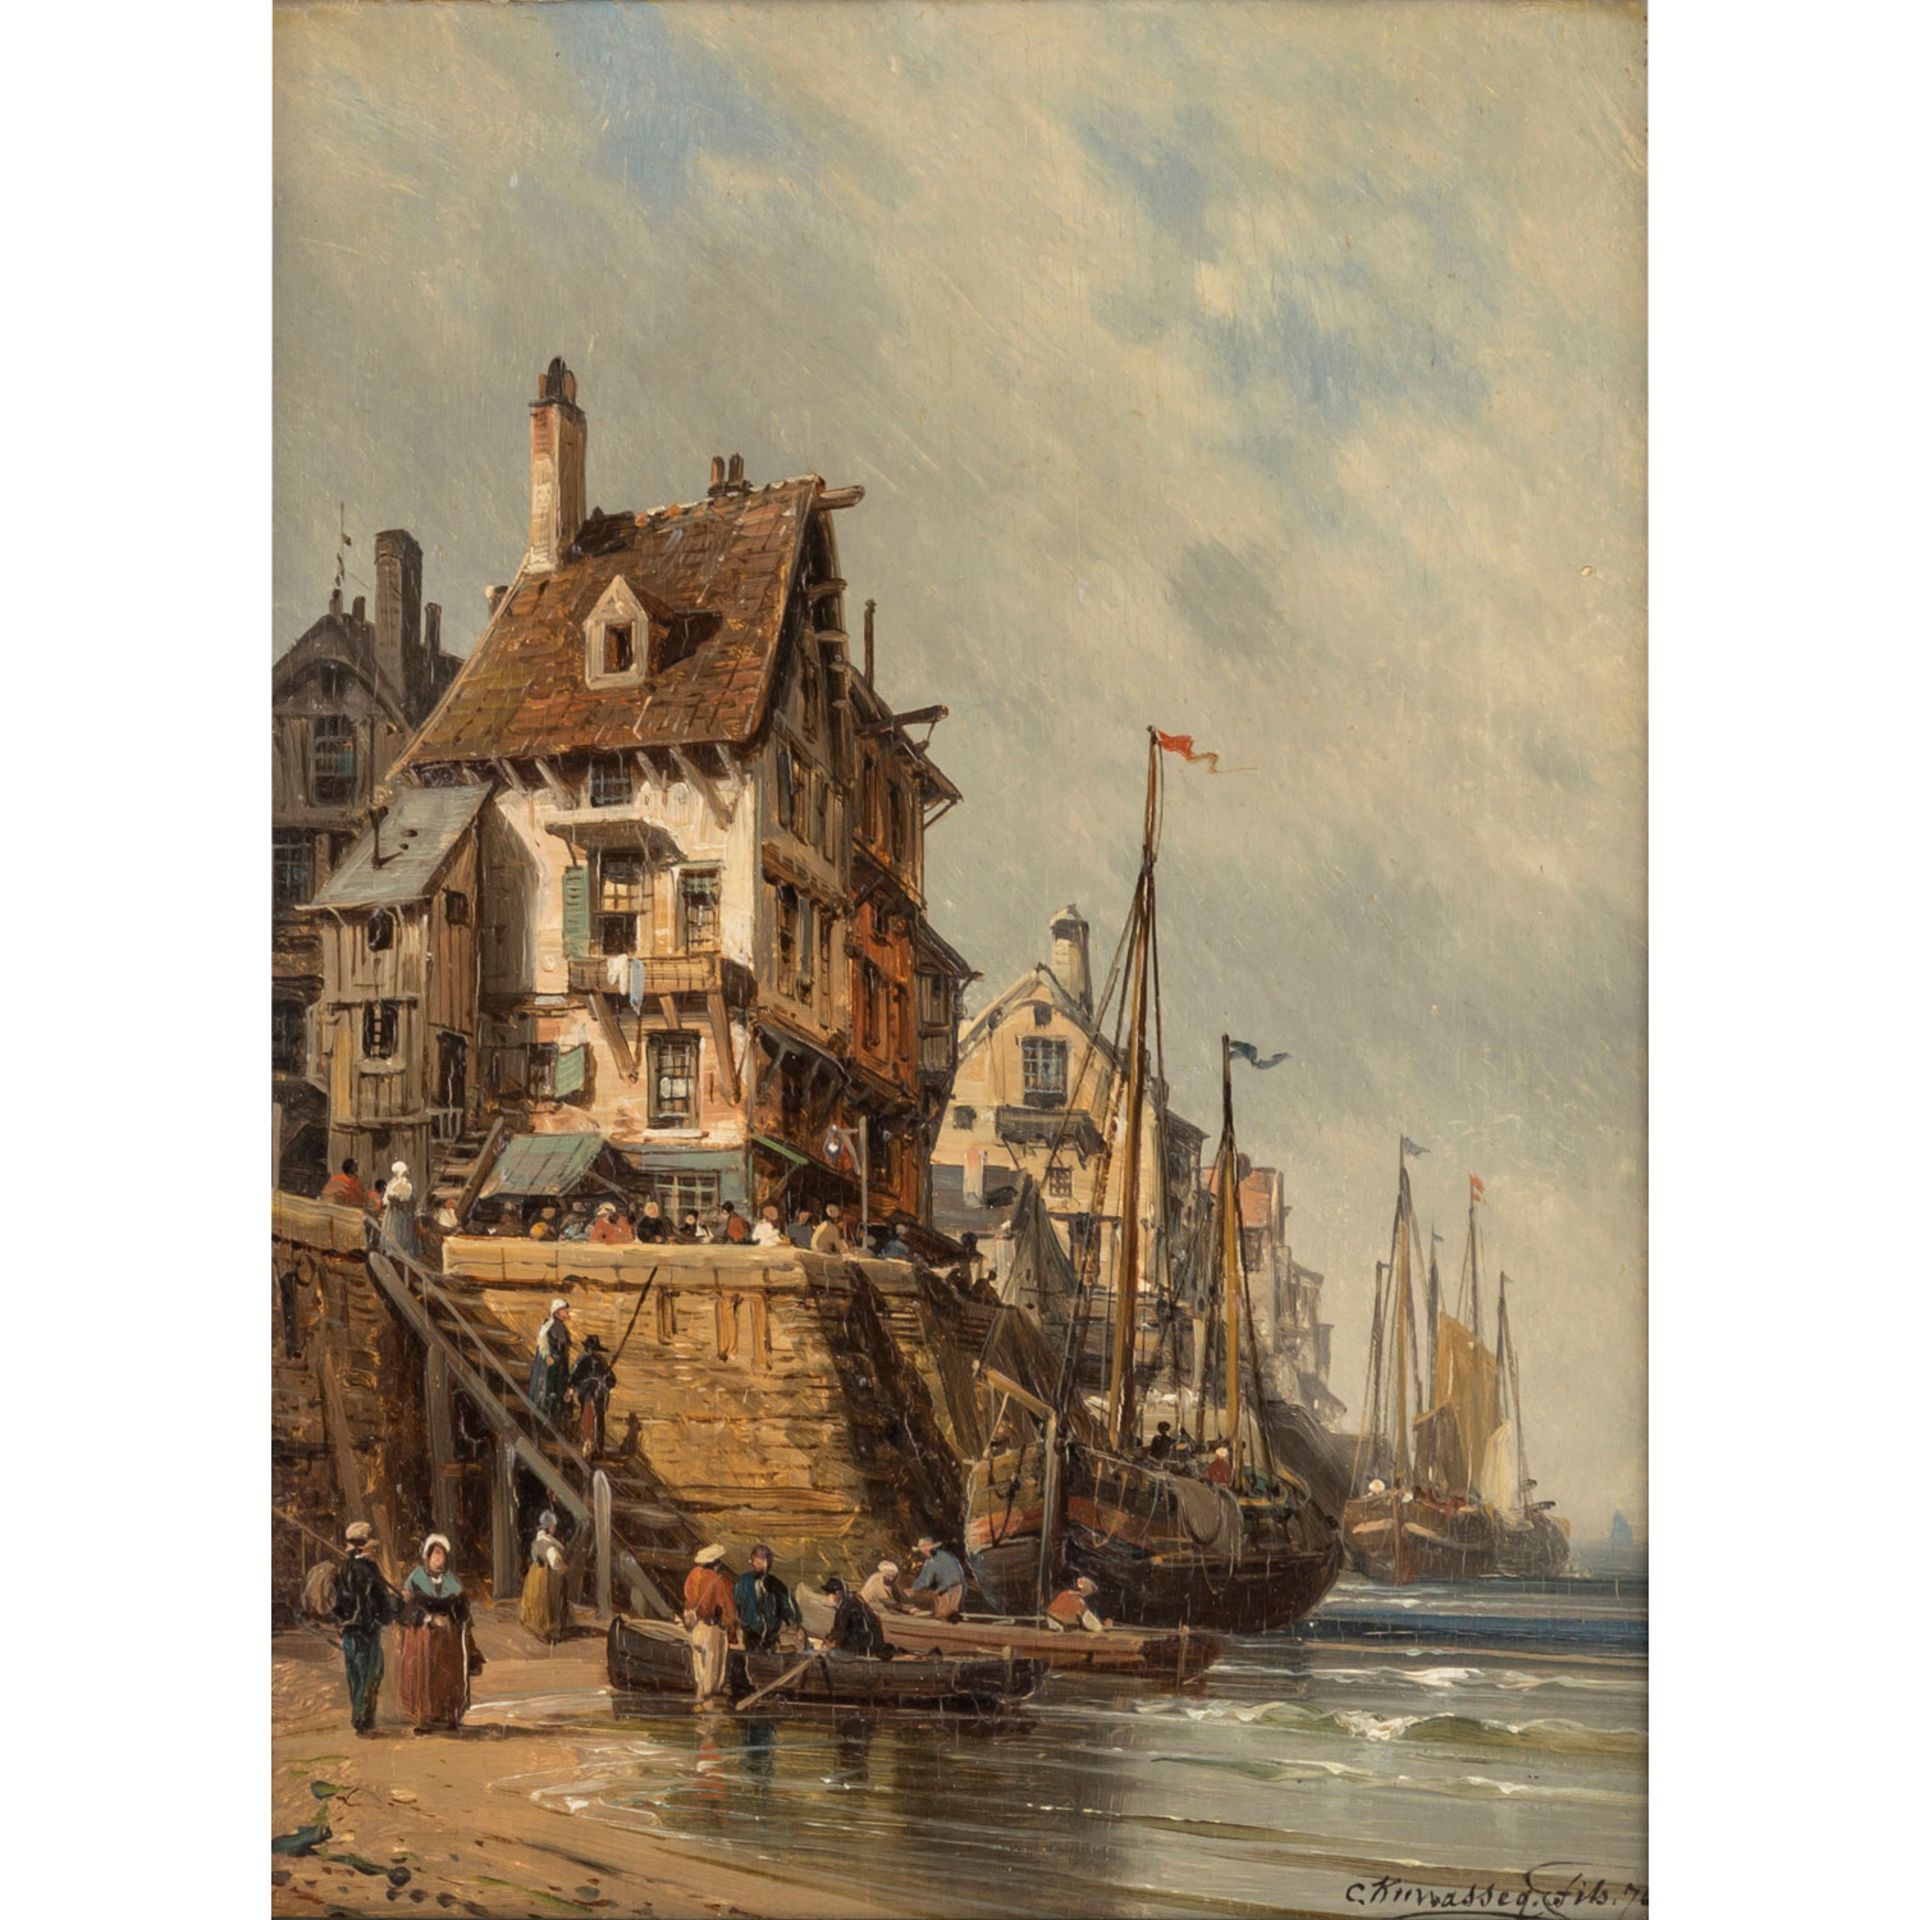 KUWASSEG, CHARLES EUPHRASIE (1838-1904), "Segelschiffe vor holländischer Hafenstadt",<